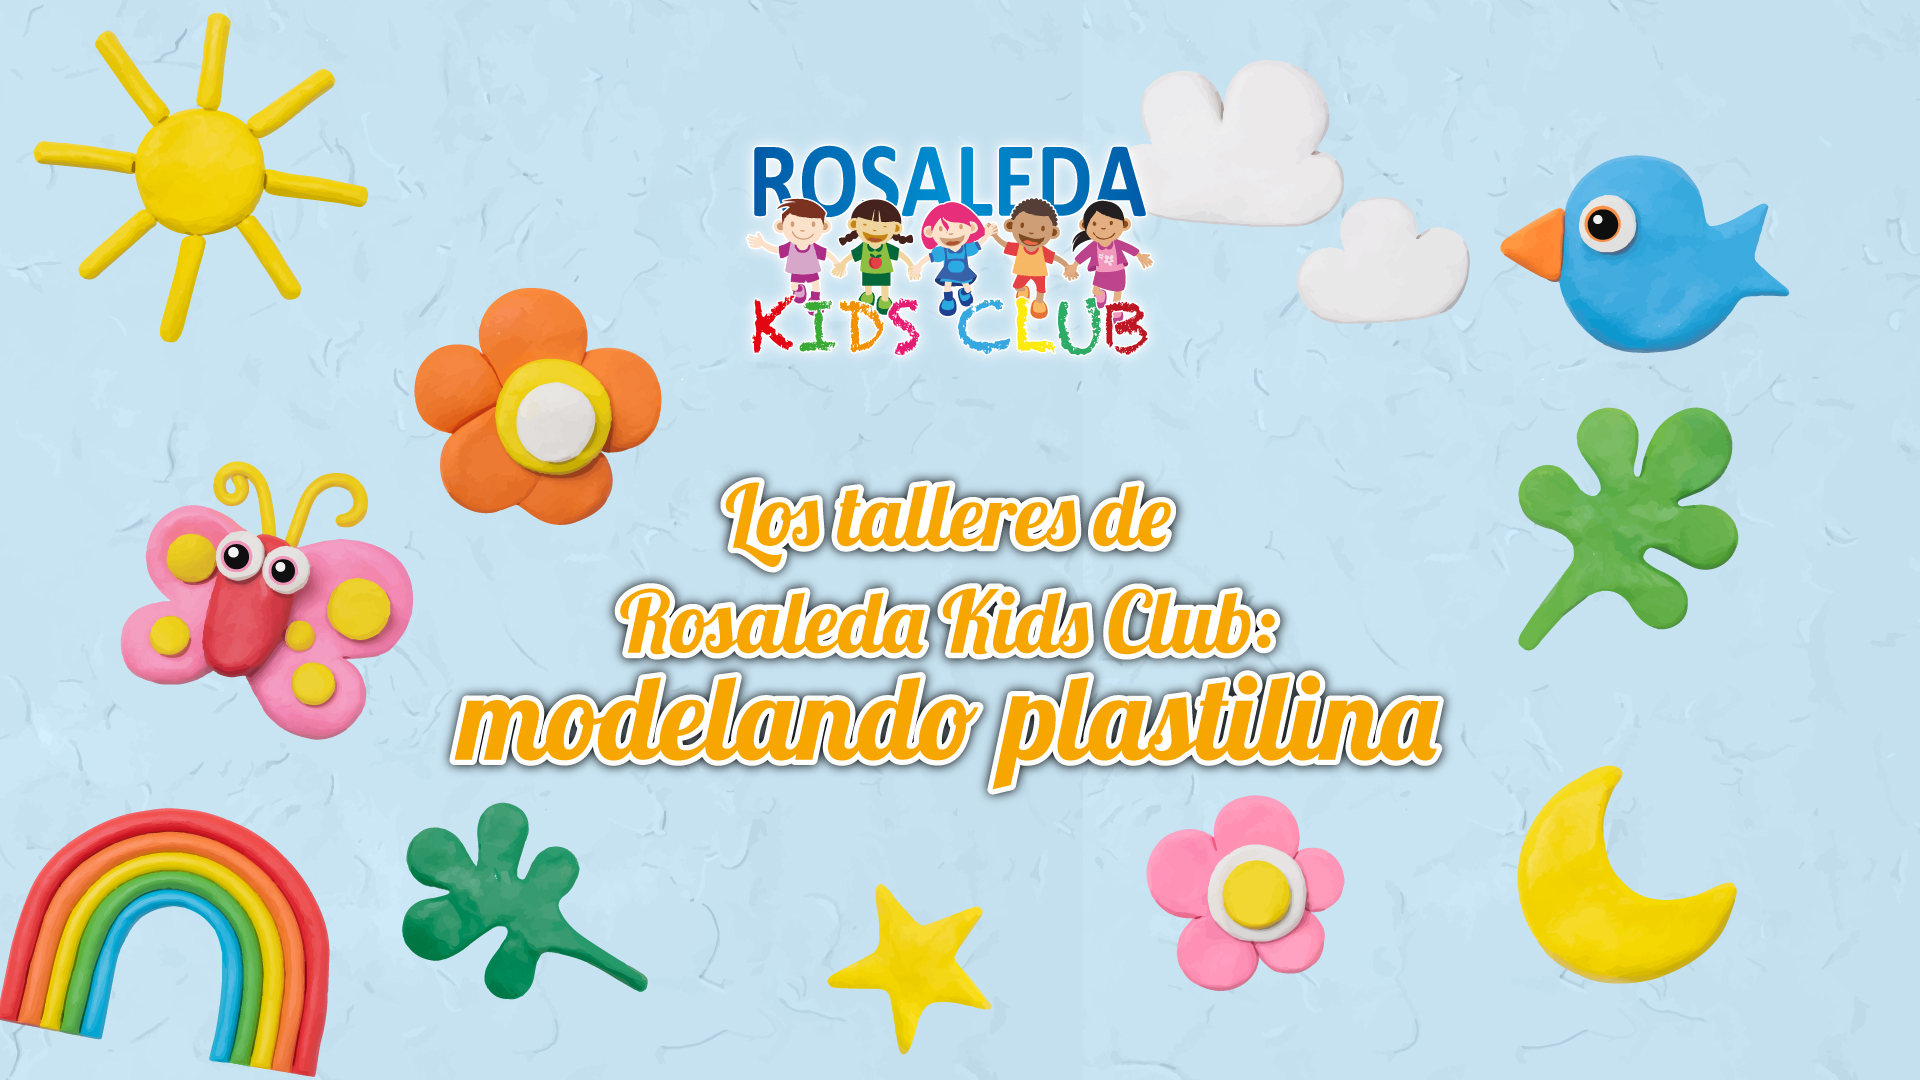 Las talleres de Rosaleda Kids Club: modelando plastilina